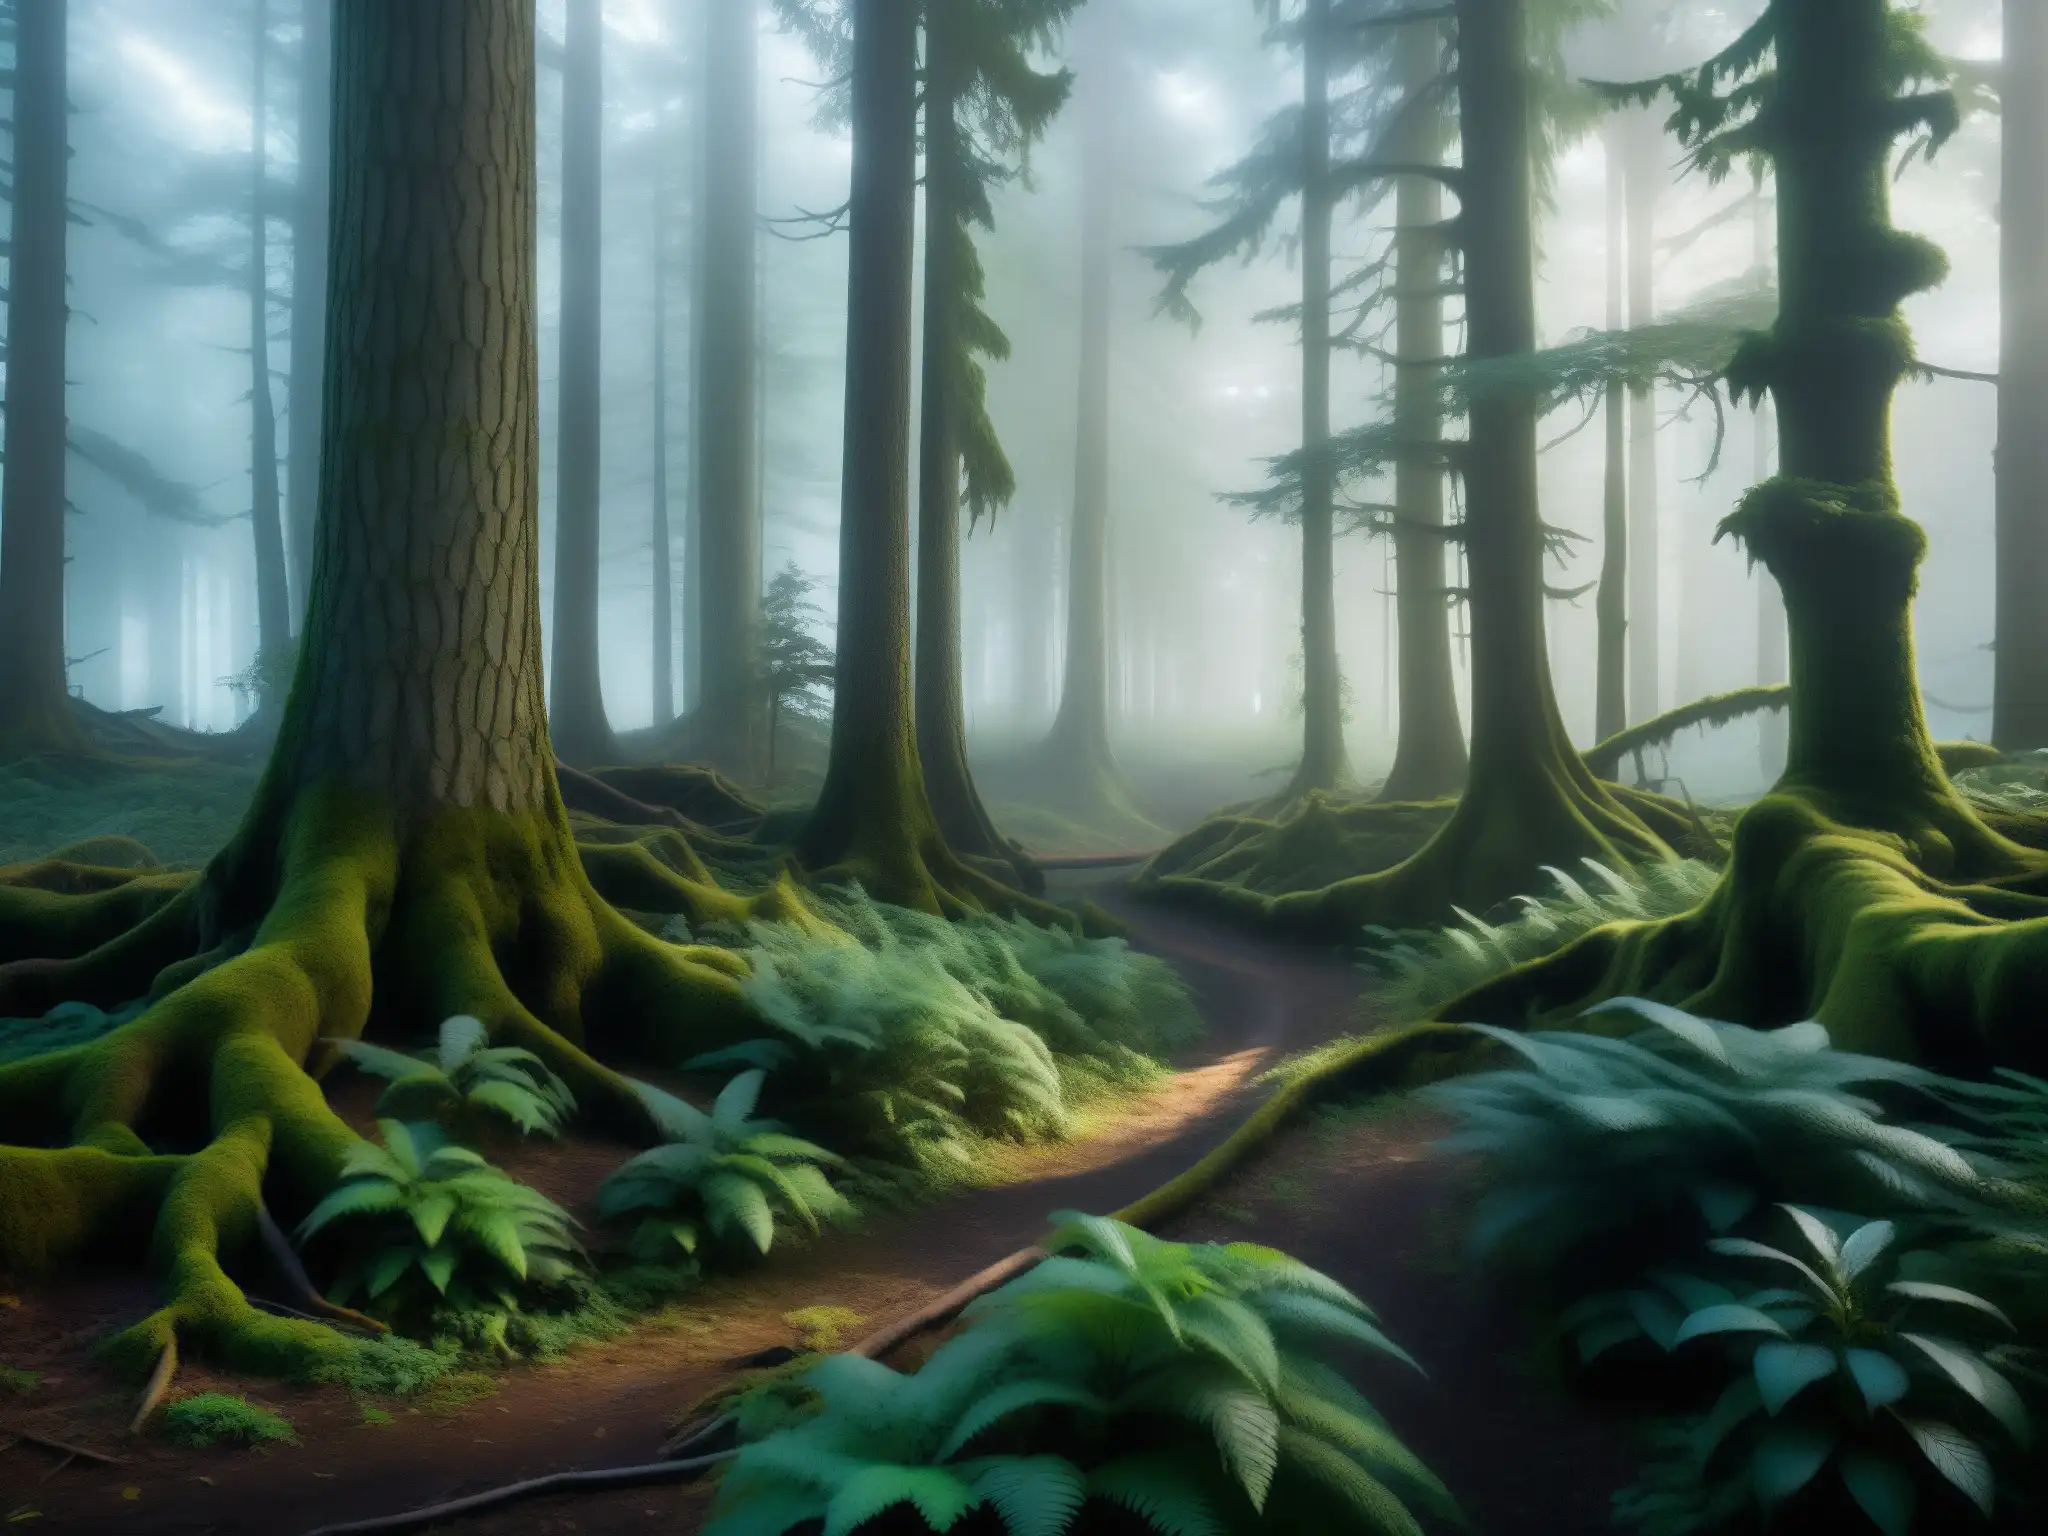 Misterioso bosque neblinoso al amanecer, con árboles retorcidos y un sendero desvanecido